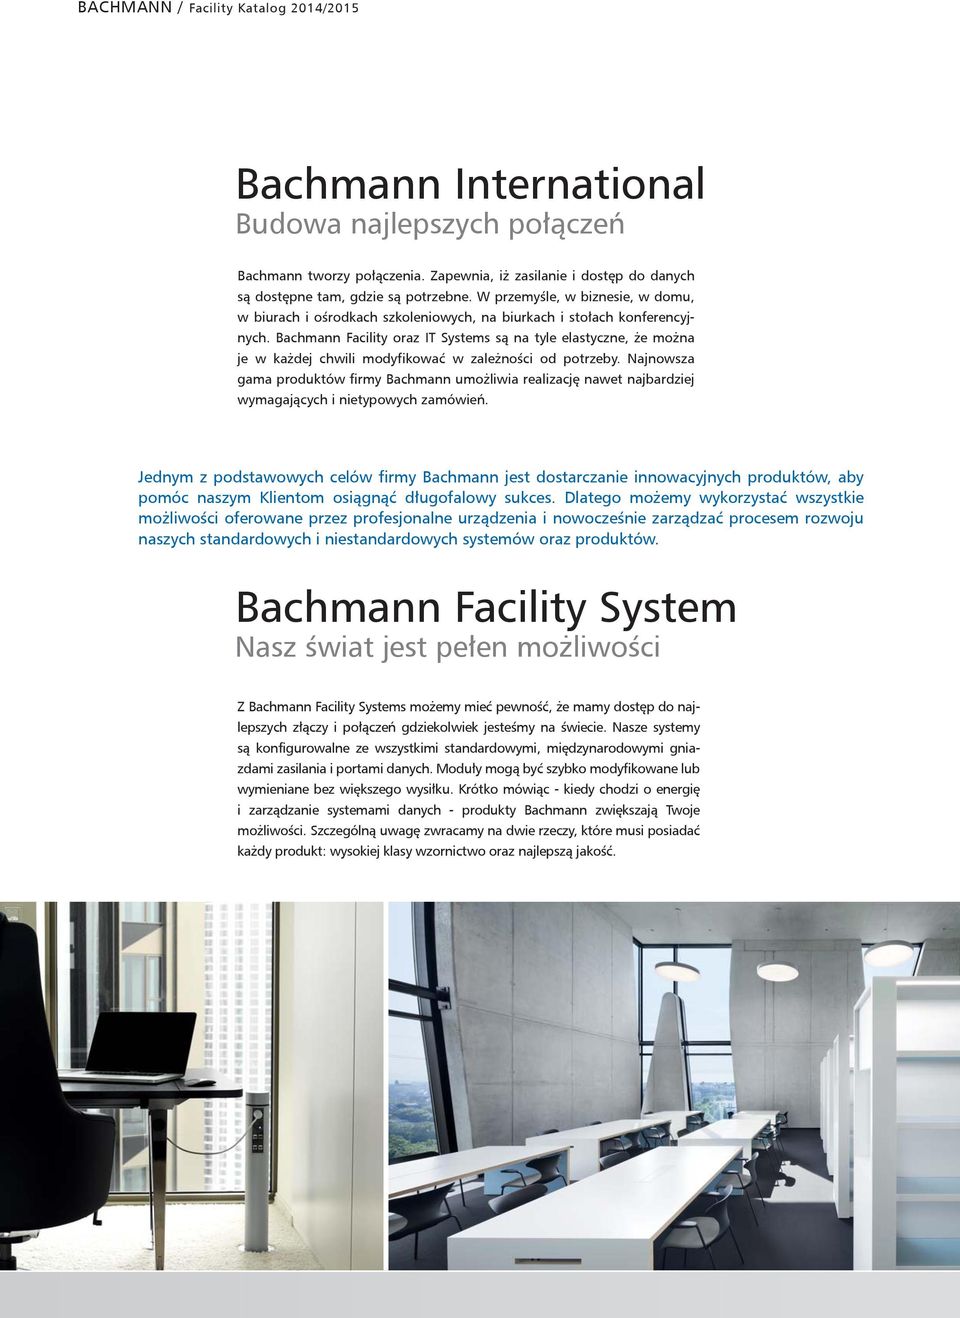 Bachmann Facility oraz IT Systems są na tyle elastyczne, że można je w każdej chwili modyfikować w zależności od potrzeby.